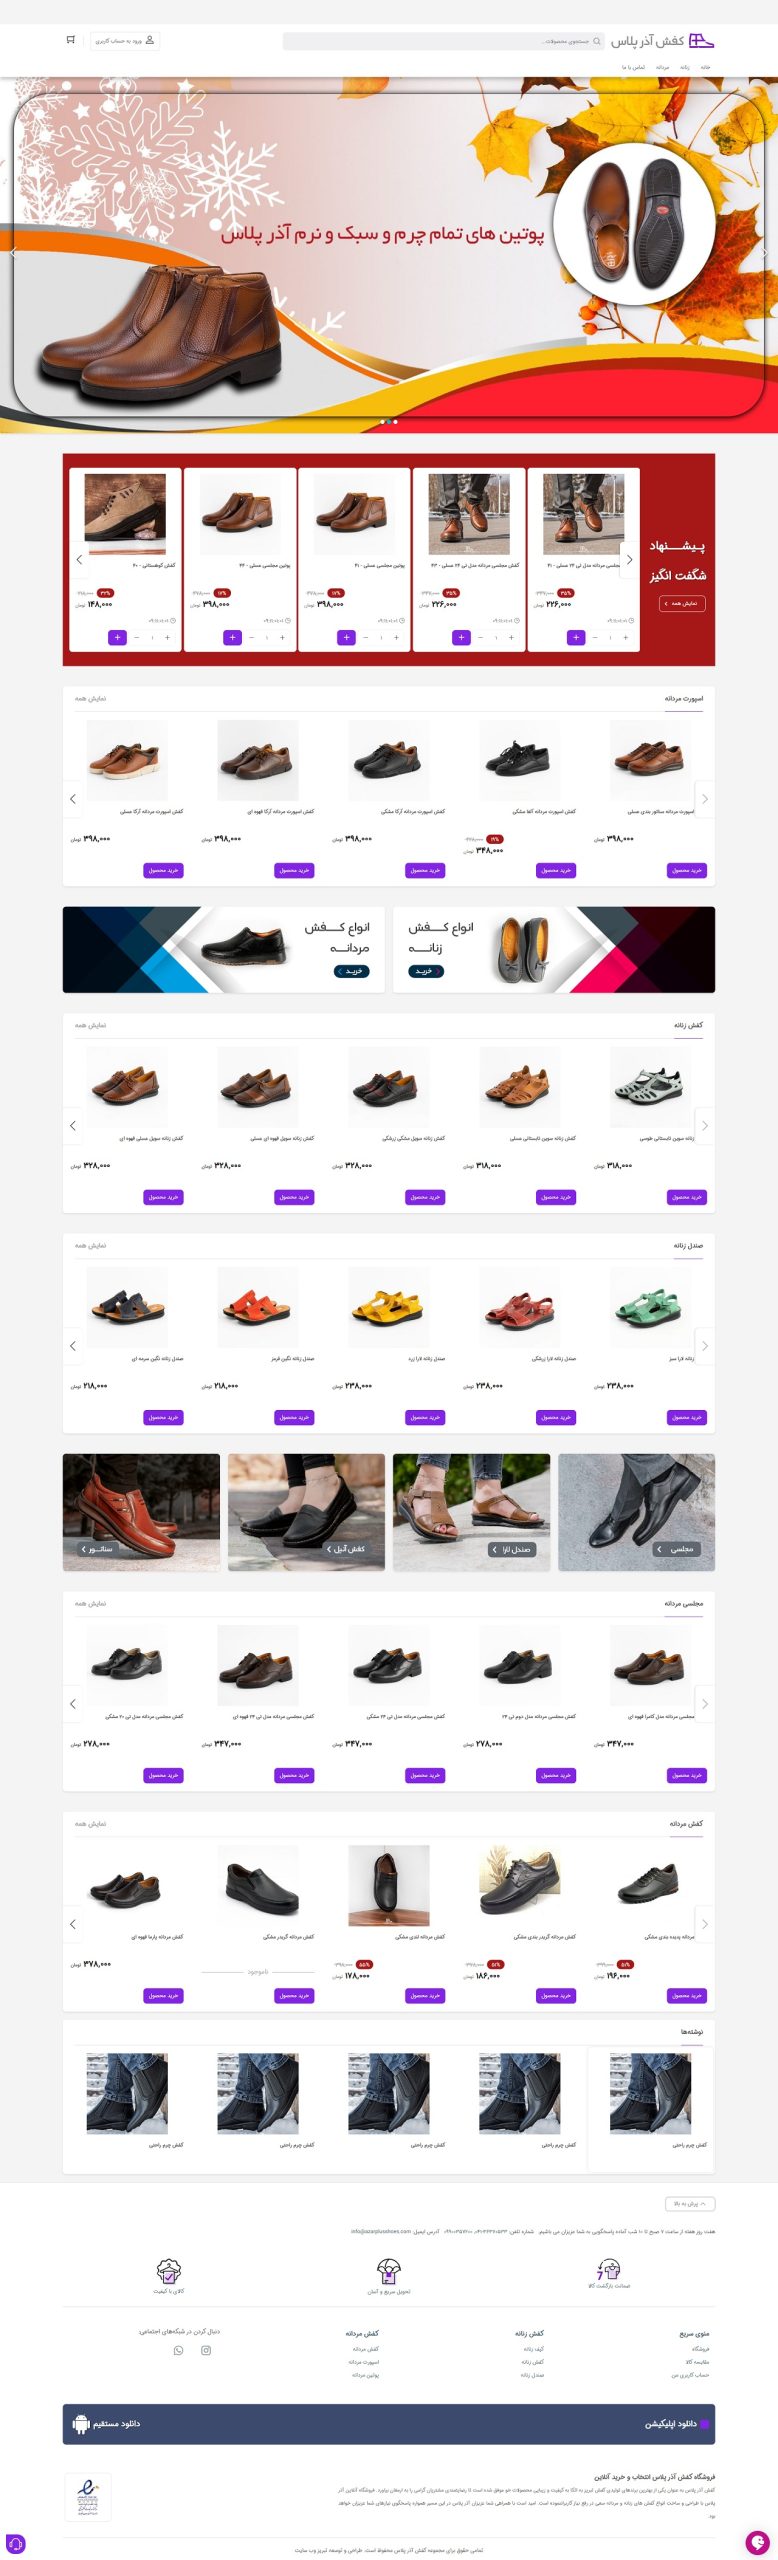 طراحی سایت فروشگاه کفش آذر پلاس